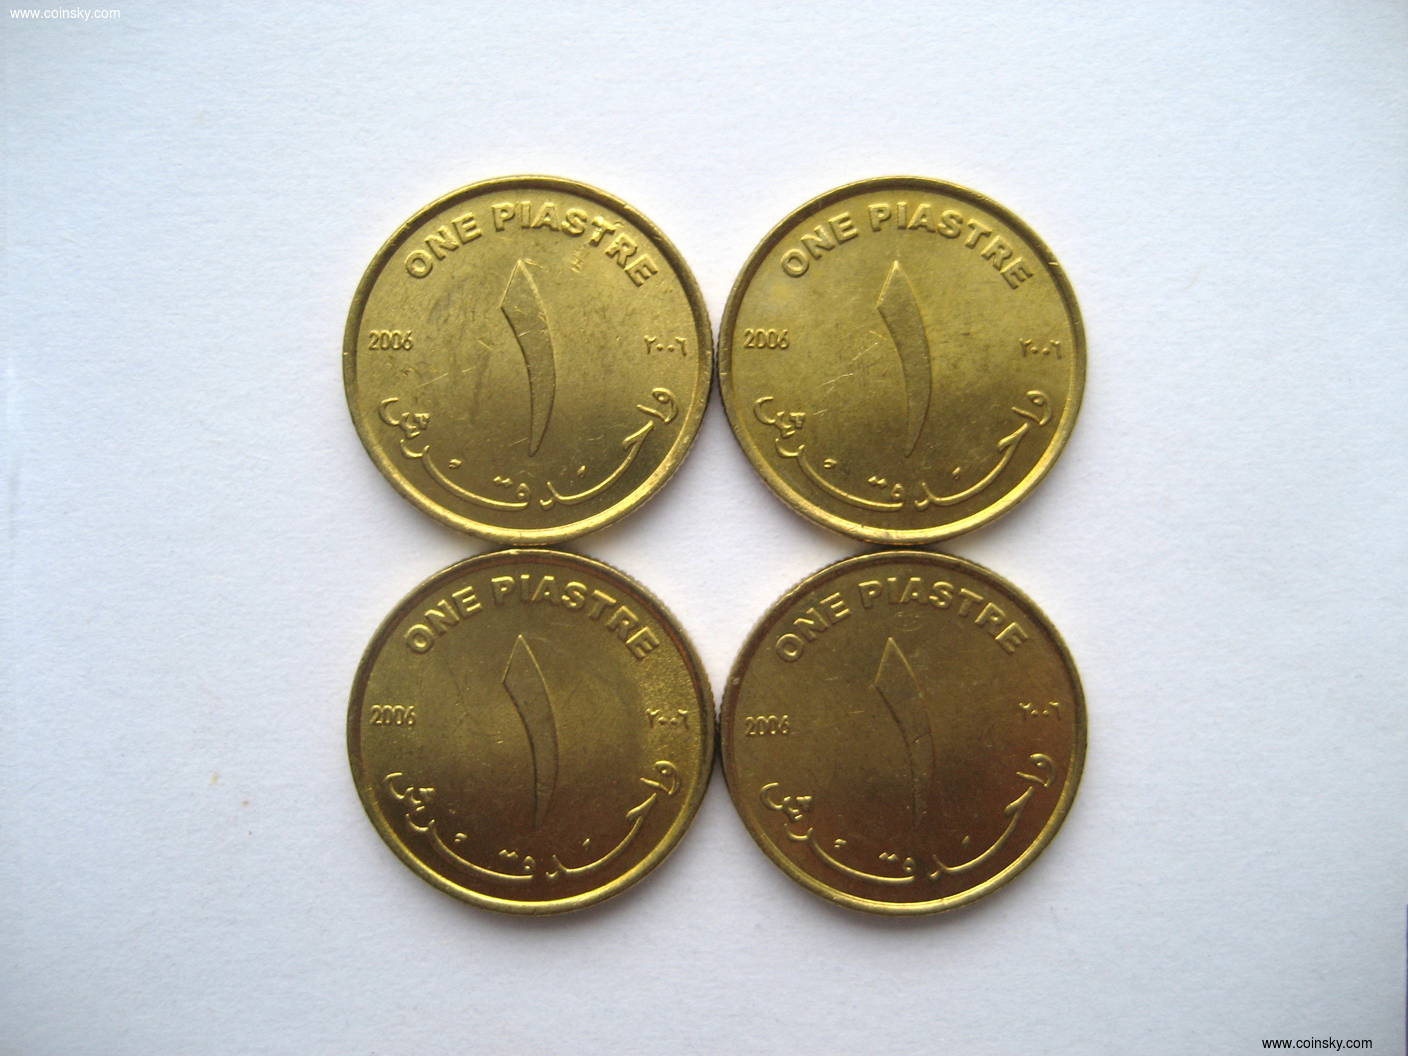 钱币天堂·交易区详情·苏丹 2006年 1皮阿斯特 未流通品 四枚一起